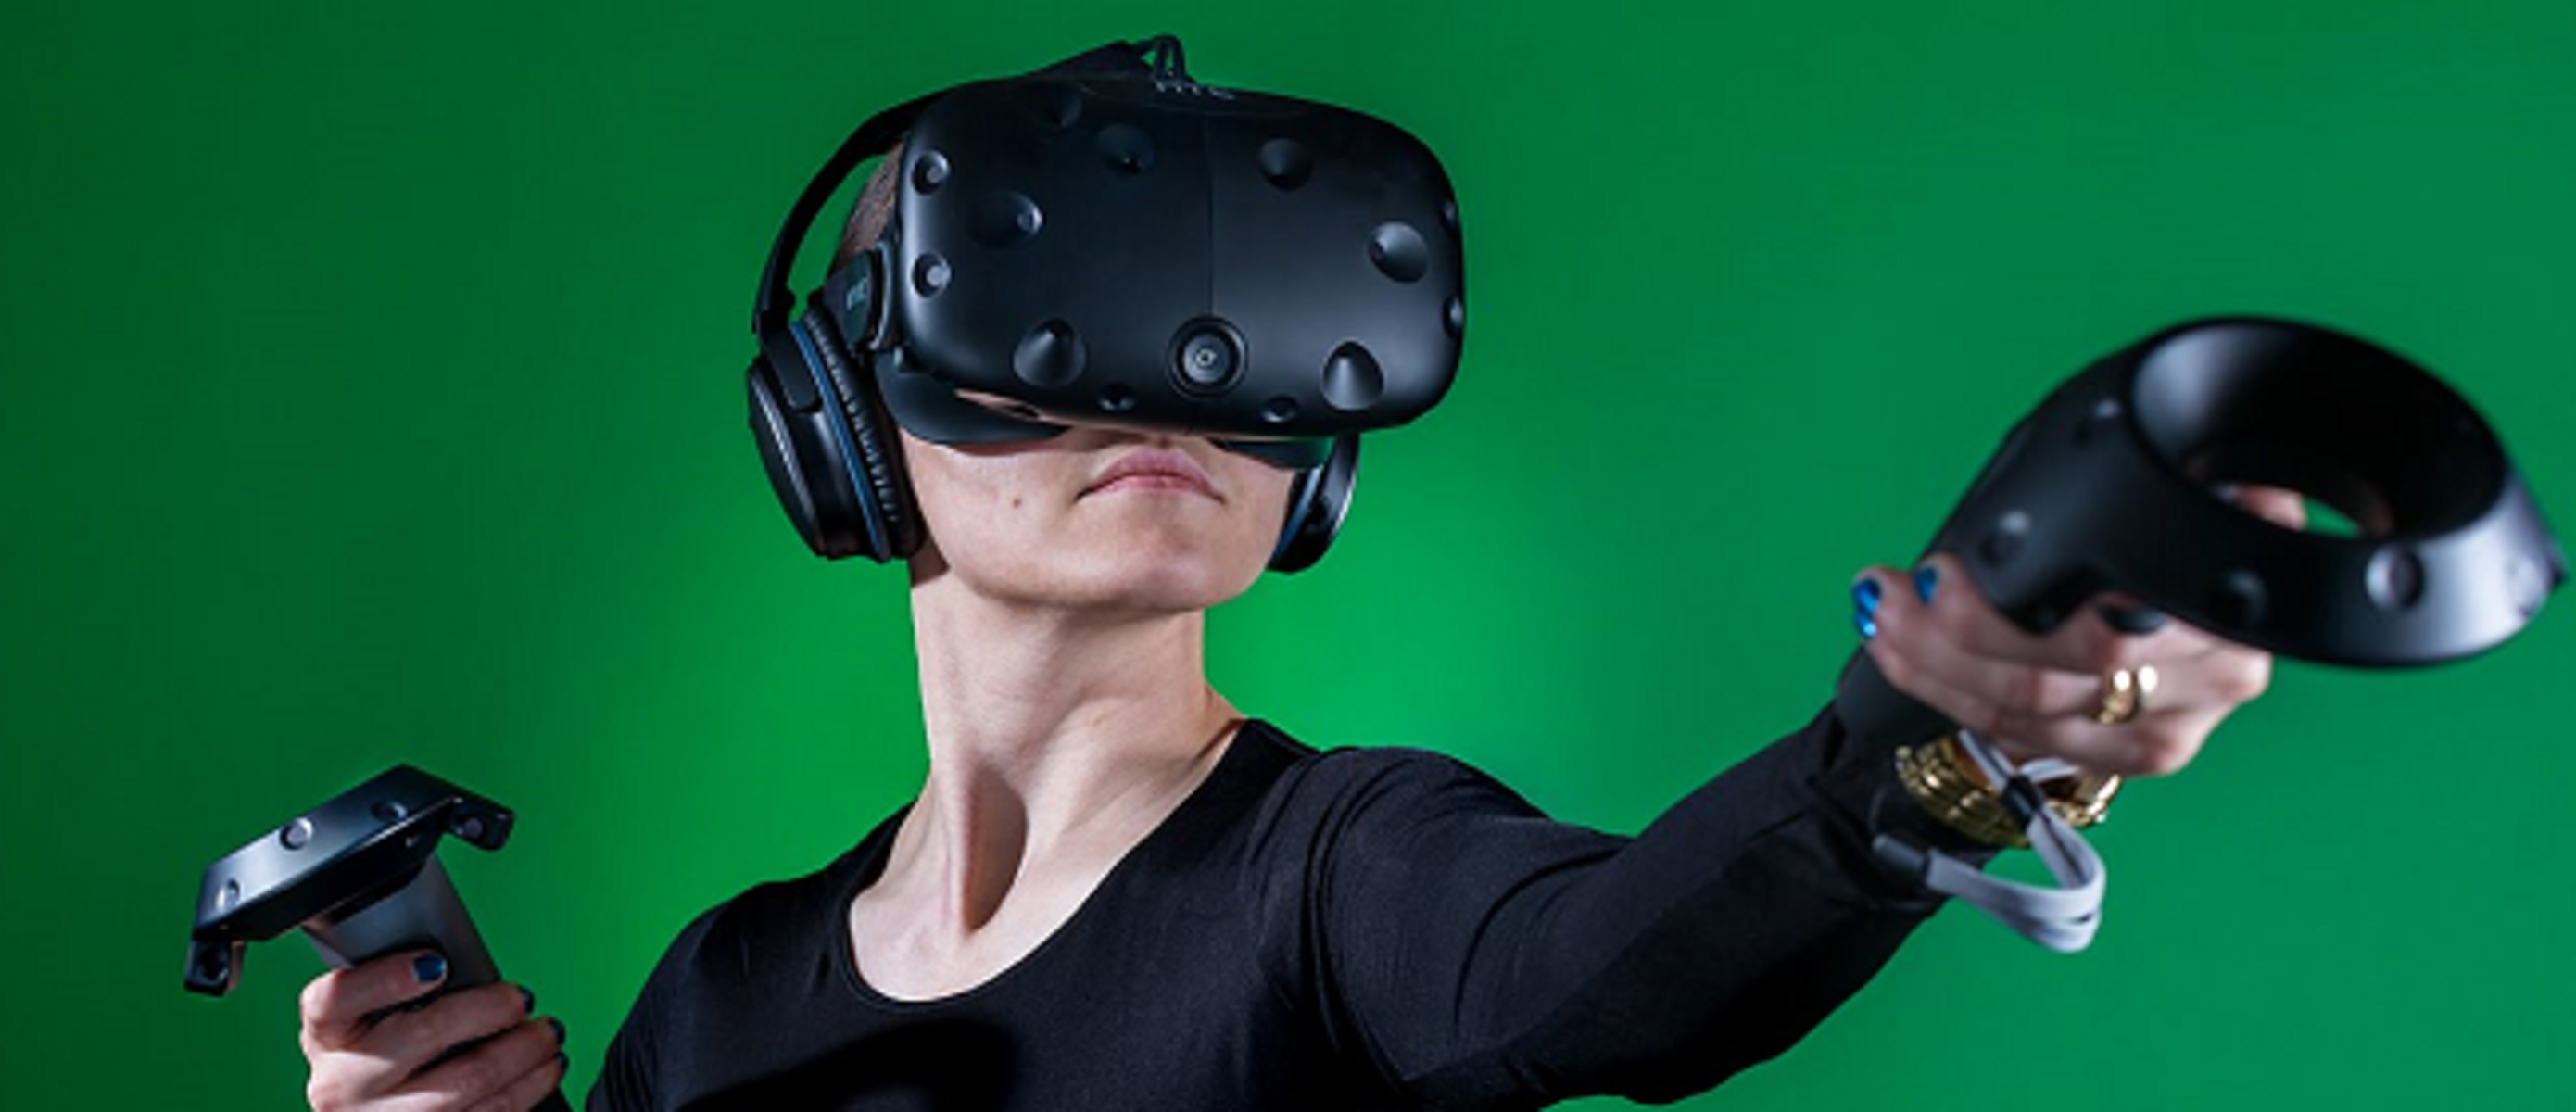 Виртуальный шлем обзор. Шлем виртуальной реальности Sony. Фигурки человека в шлеме виртуальной реальности. Шлем виртуал Реал Vive. Виртуальная реальность праздник.